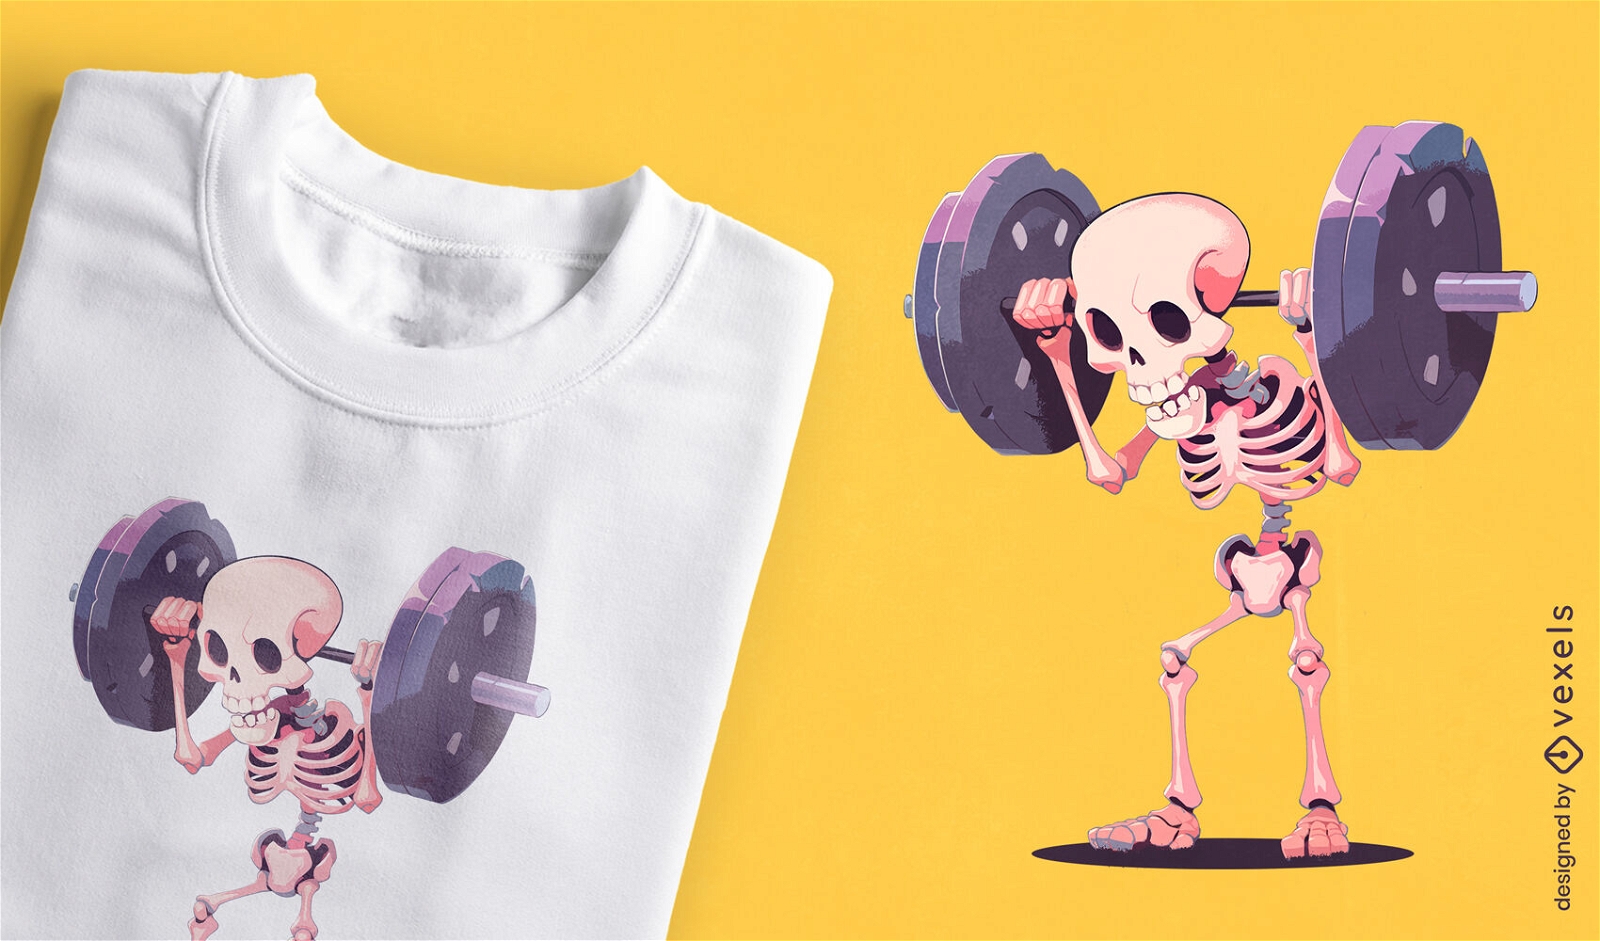 Humorous weightlifting skeleton t-shirt design